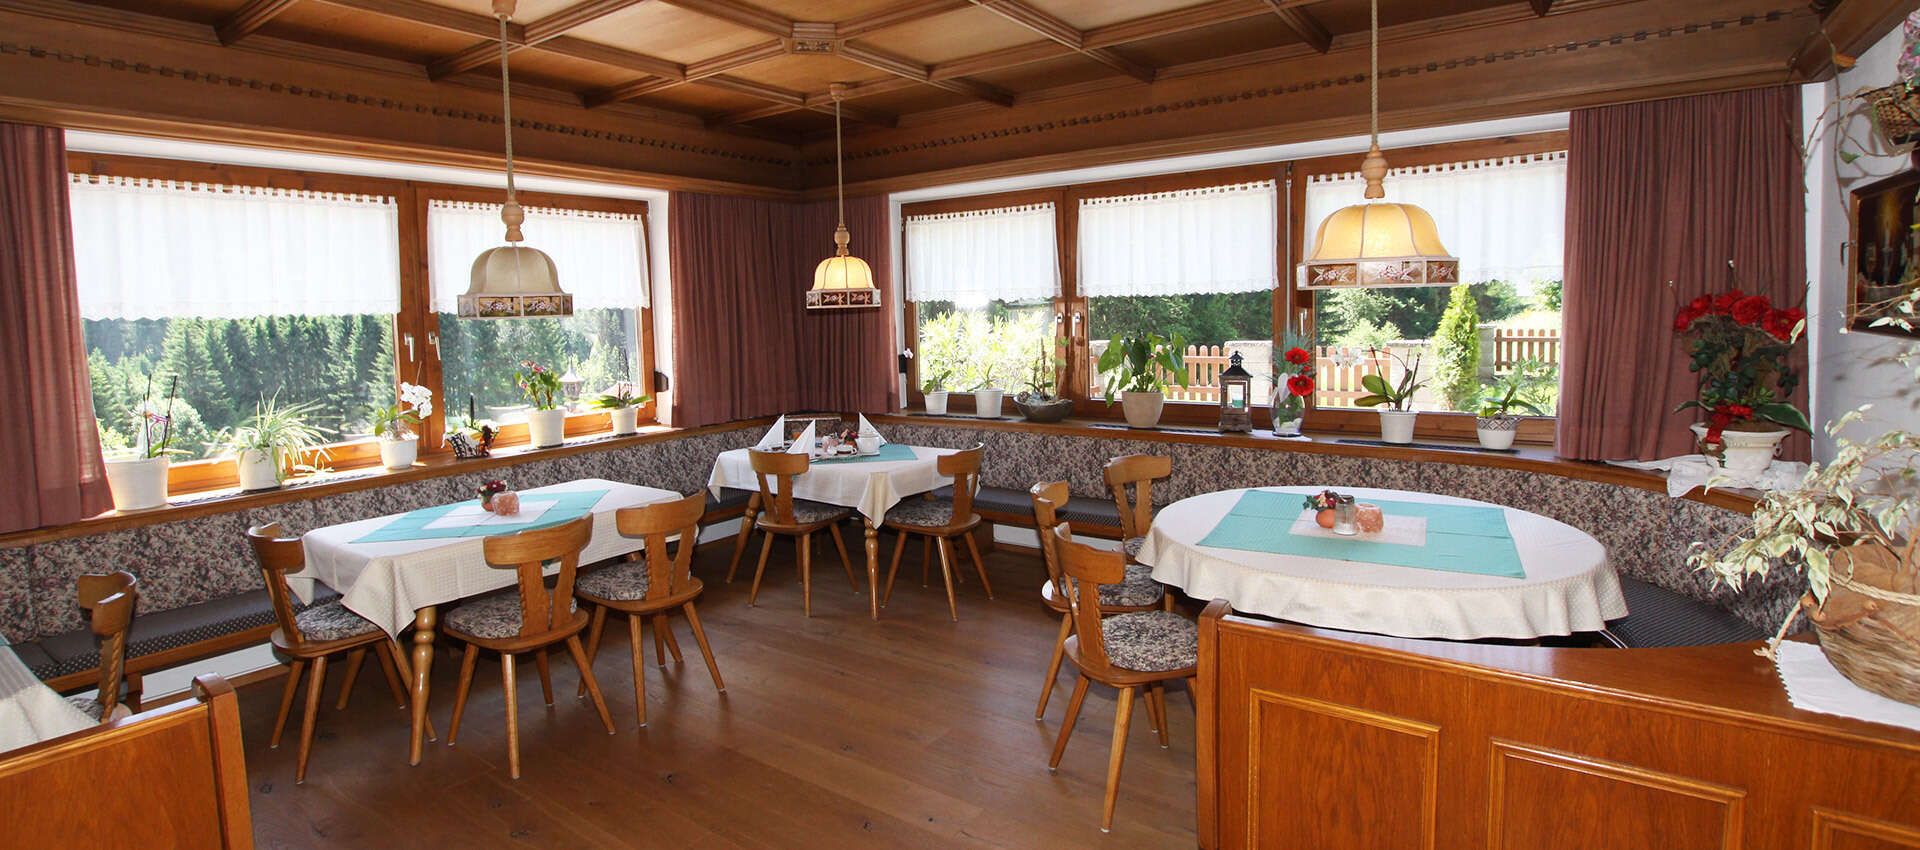 Frühstücksraum im Haus Margret im Zillertal